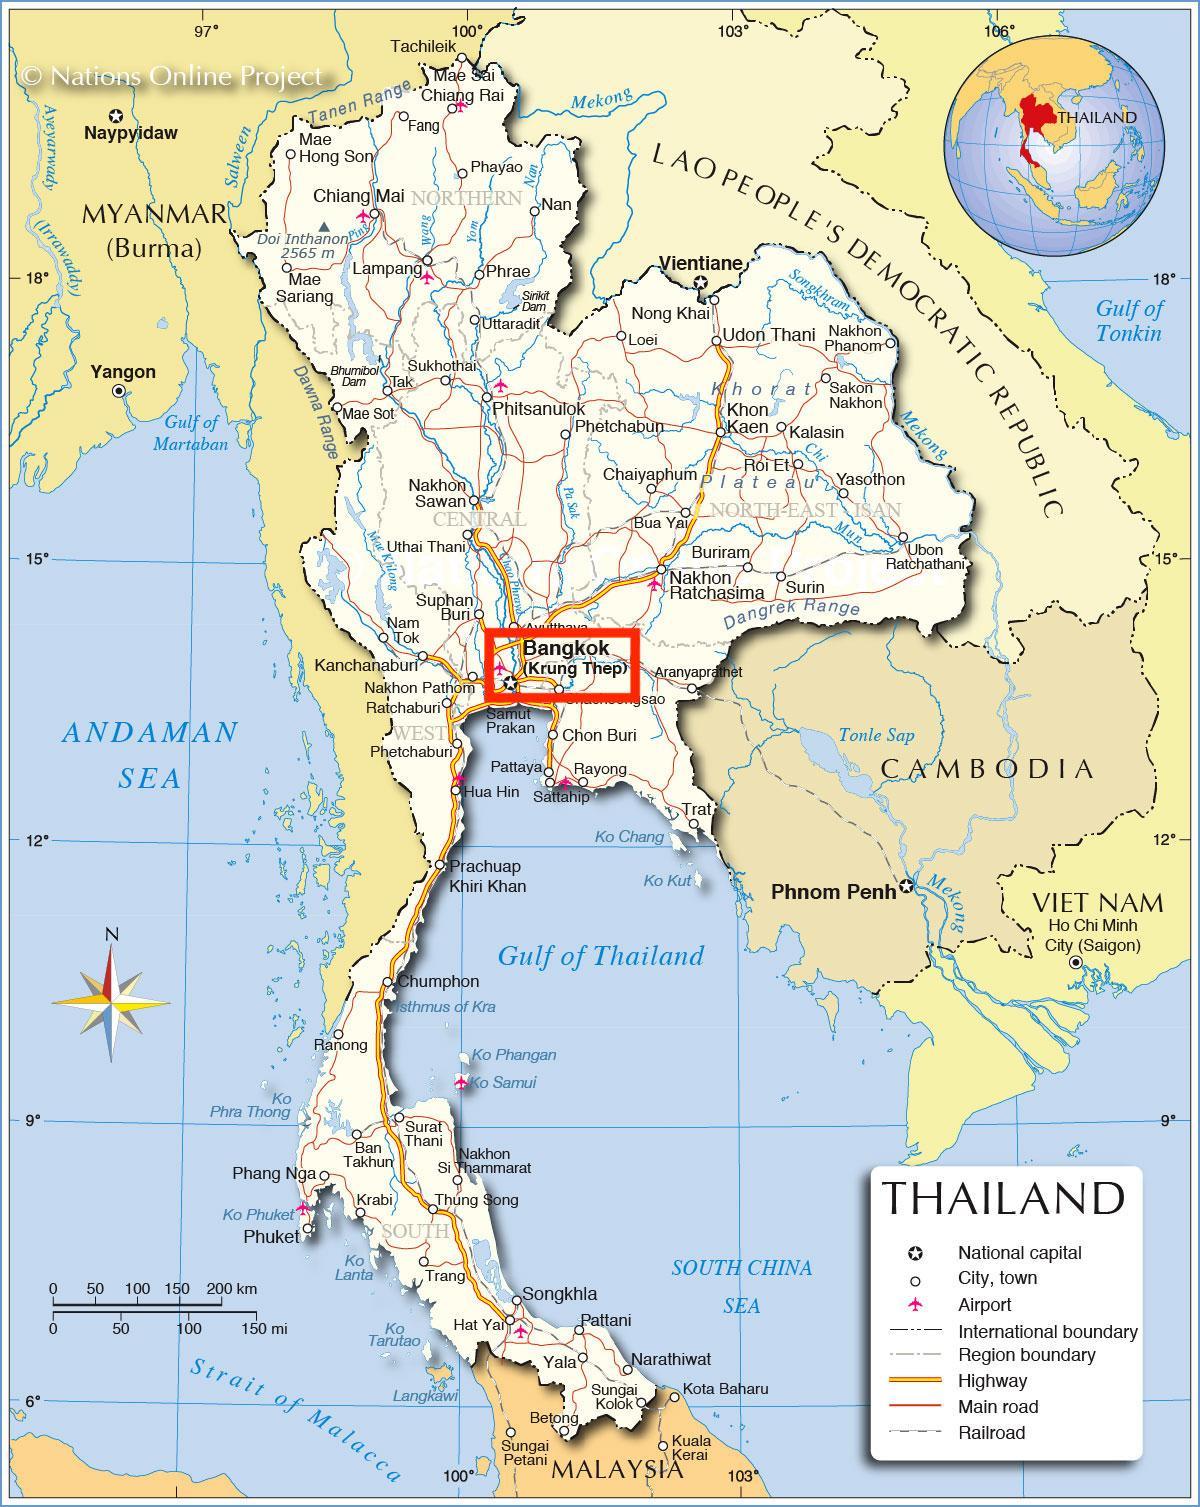 Bangkok (Krung Thep) op de kaart van Thailand